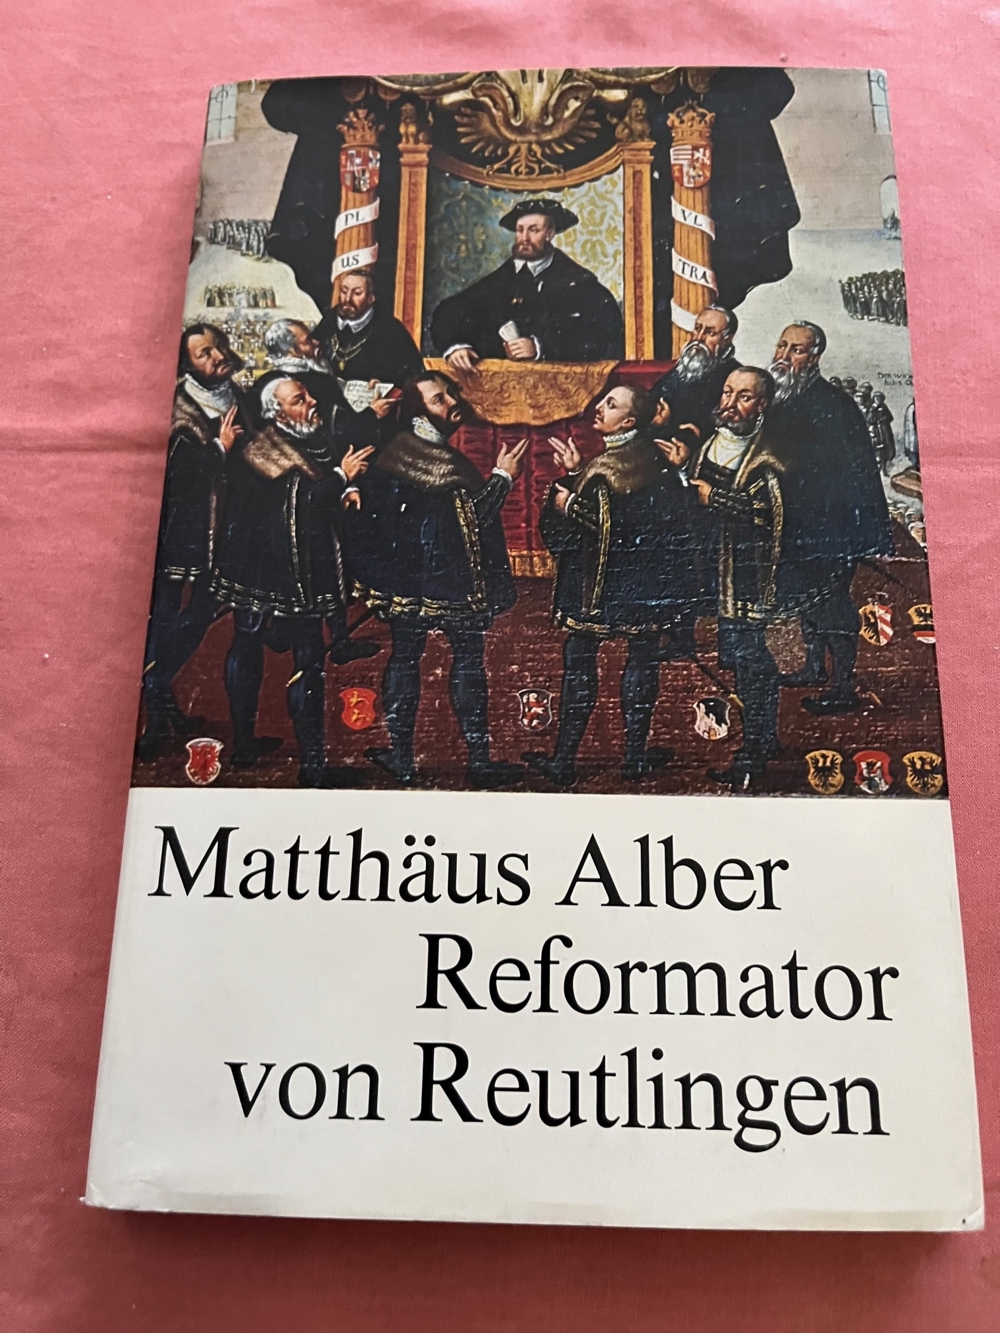 Matthäus Alber - Reformator von Reutlingen (4.12.1495-1.12.1570)